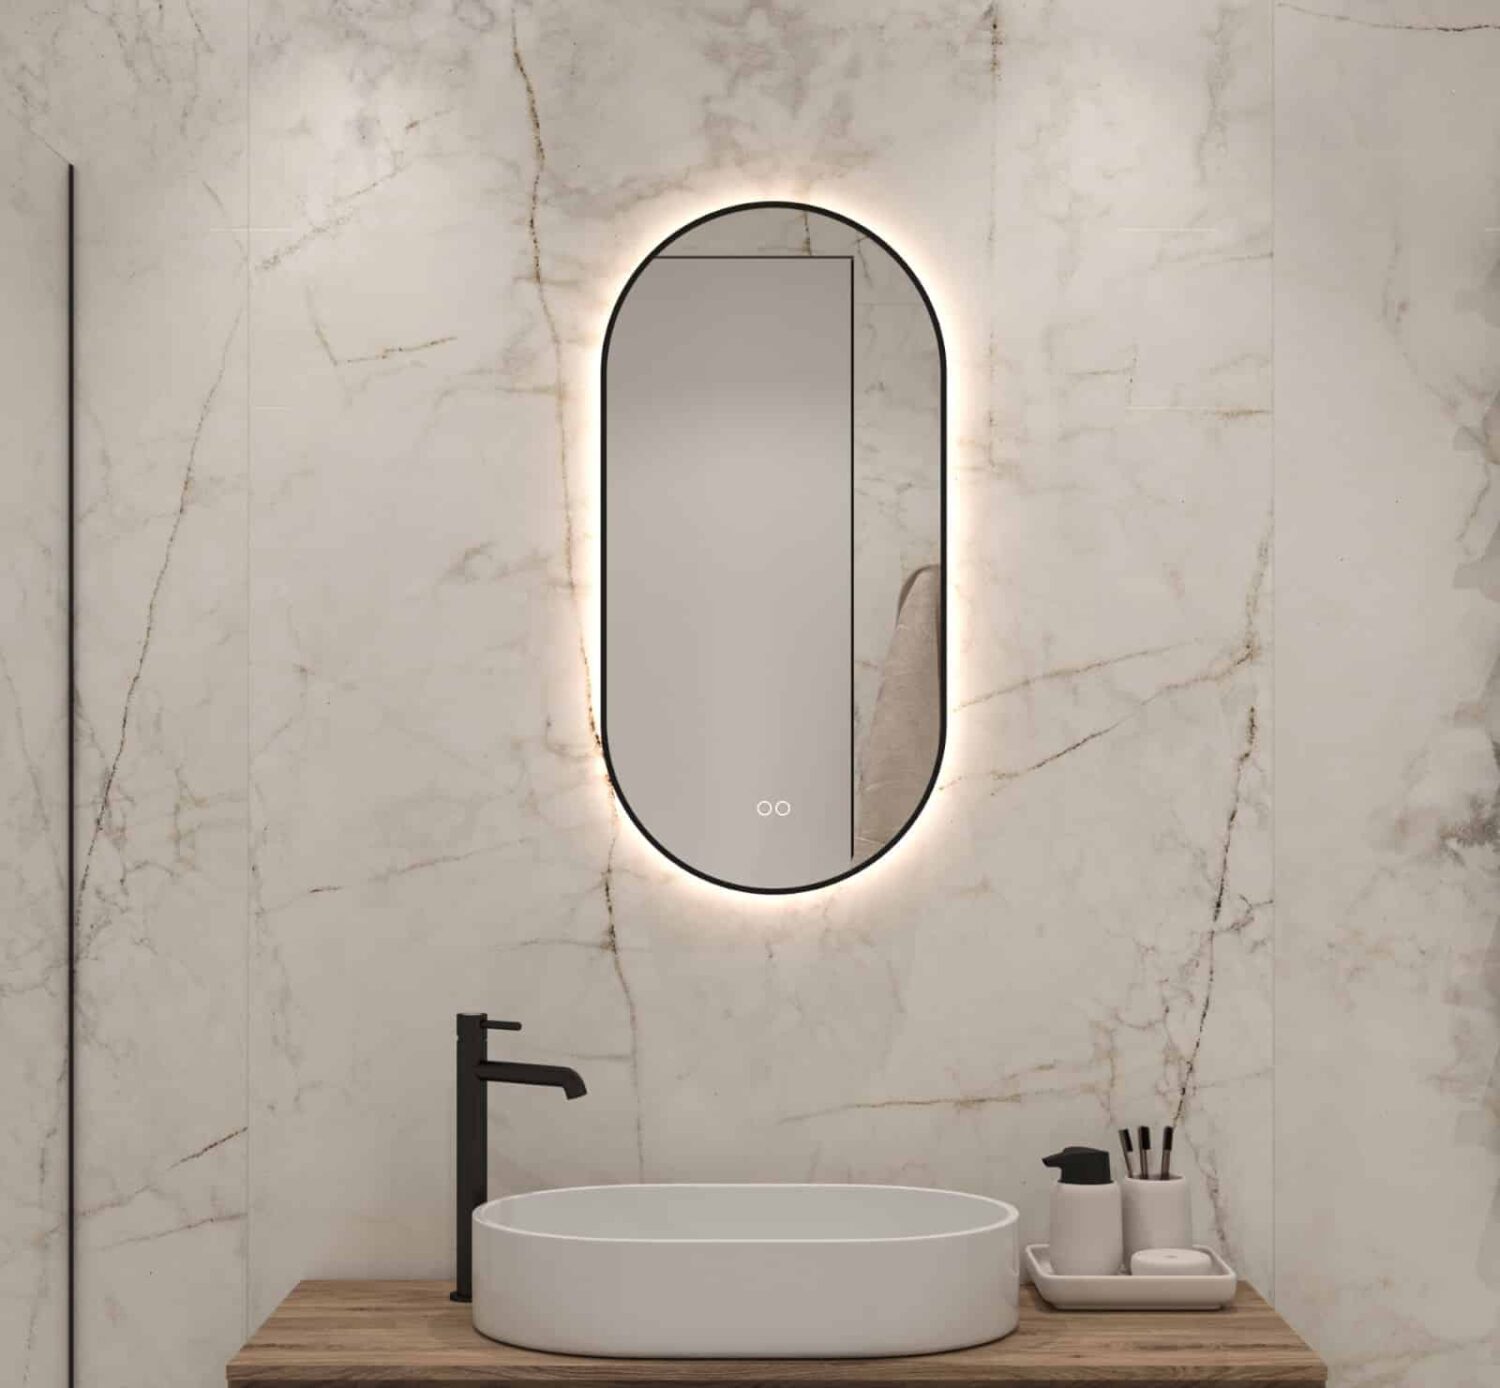 tij het is nutteloos Opnieuw schieten Ovale badkamerspiegel met LED verlichting, verwarming, touch sensor,  kleurenwissel en mat zwart frame 40x80 cm - Designspiegels